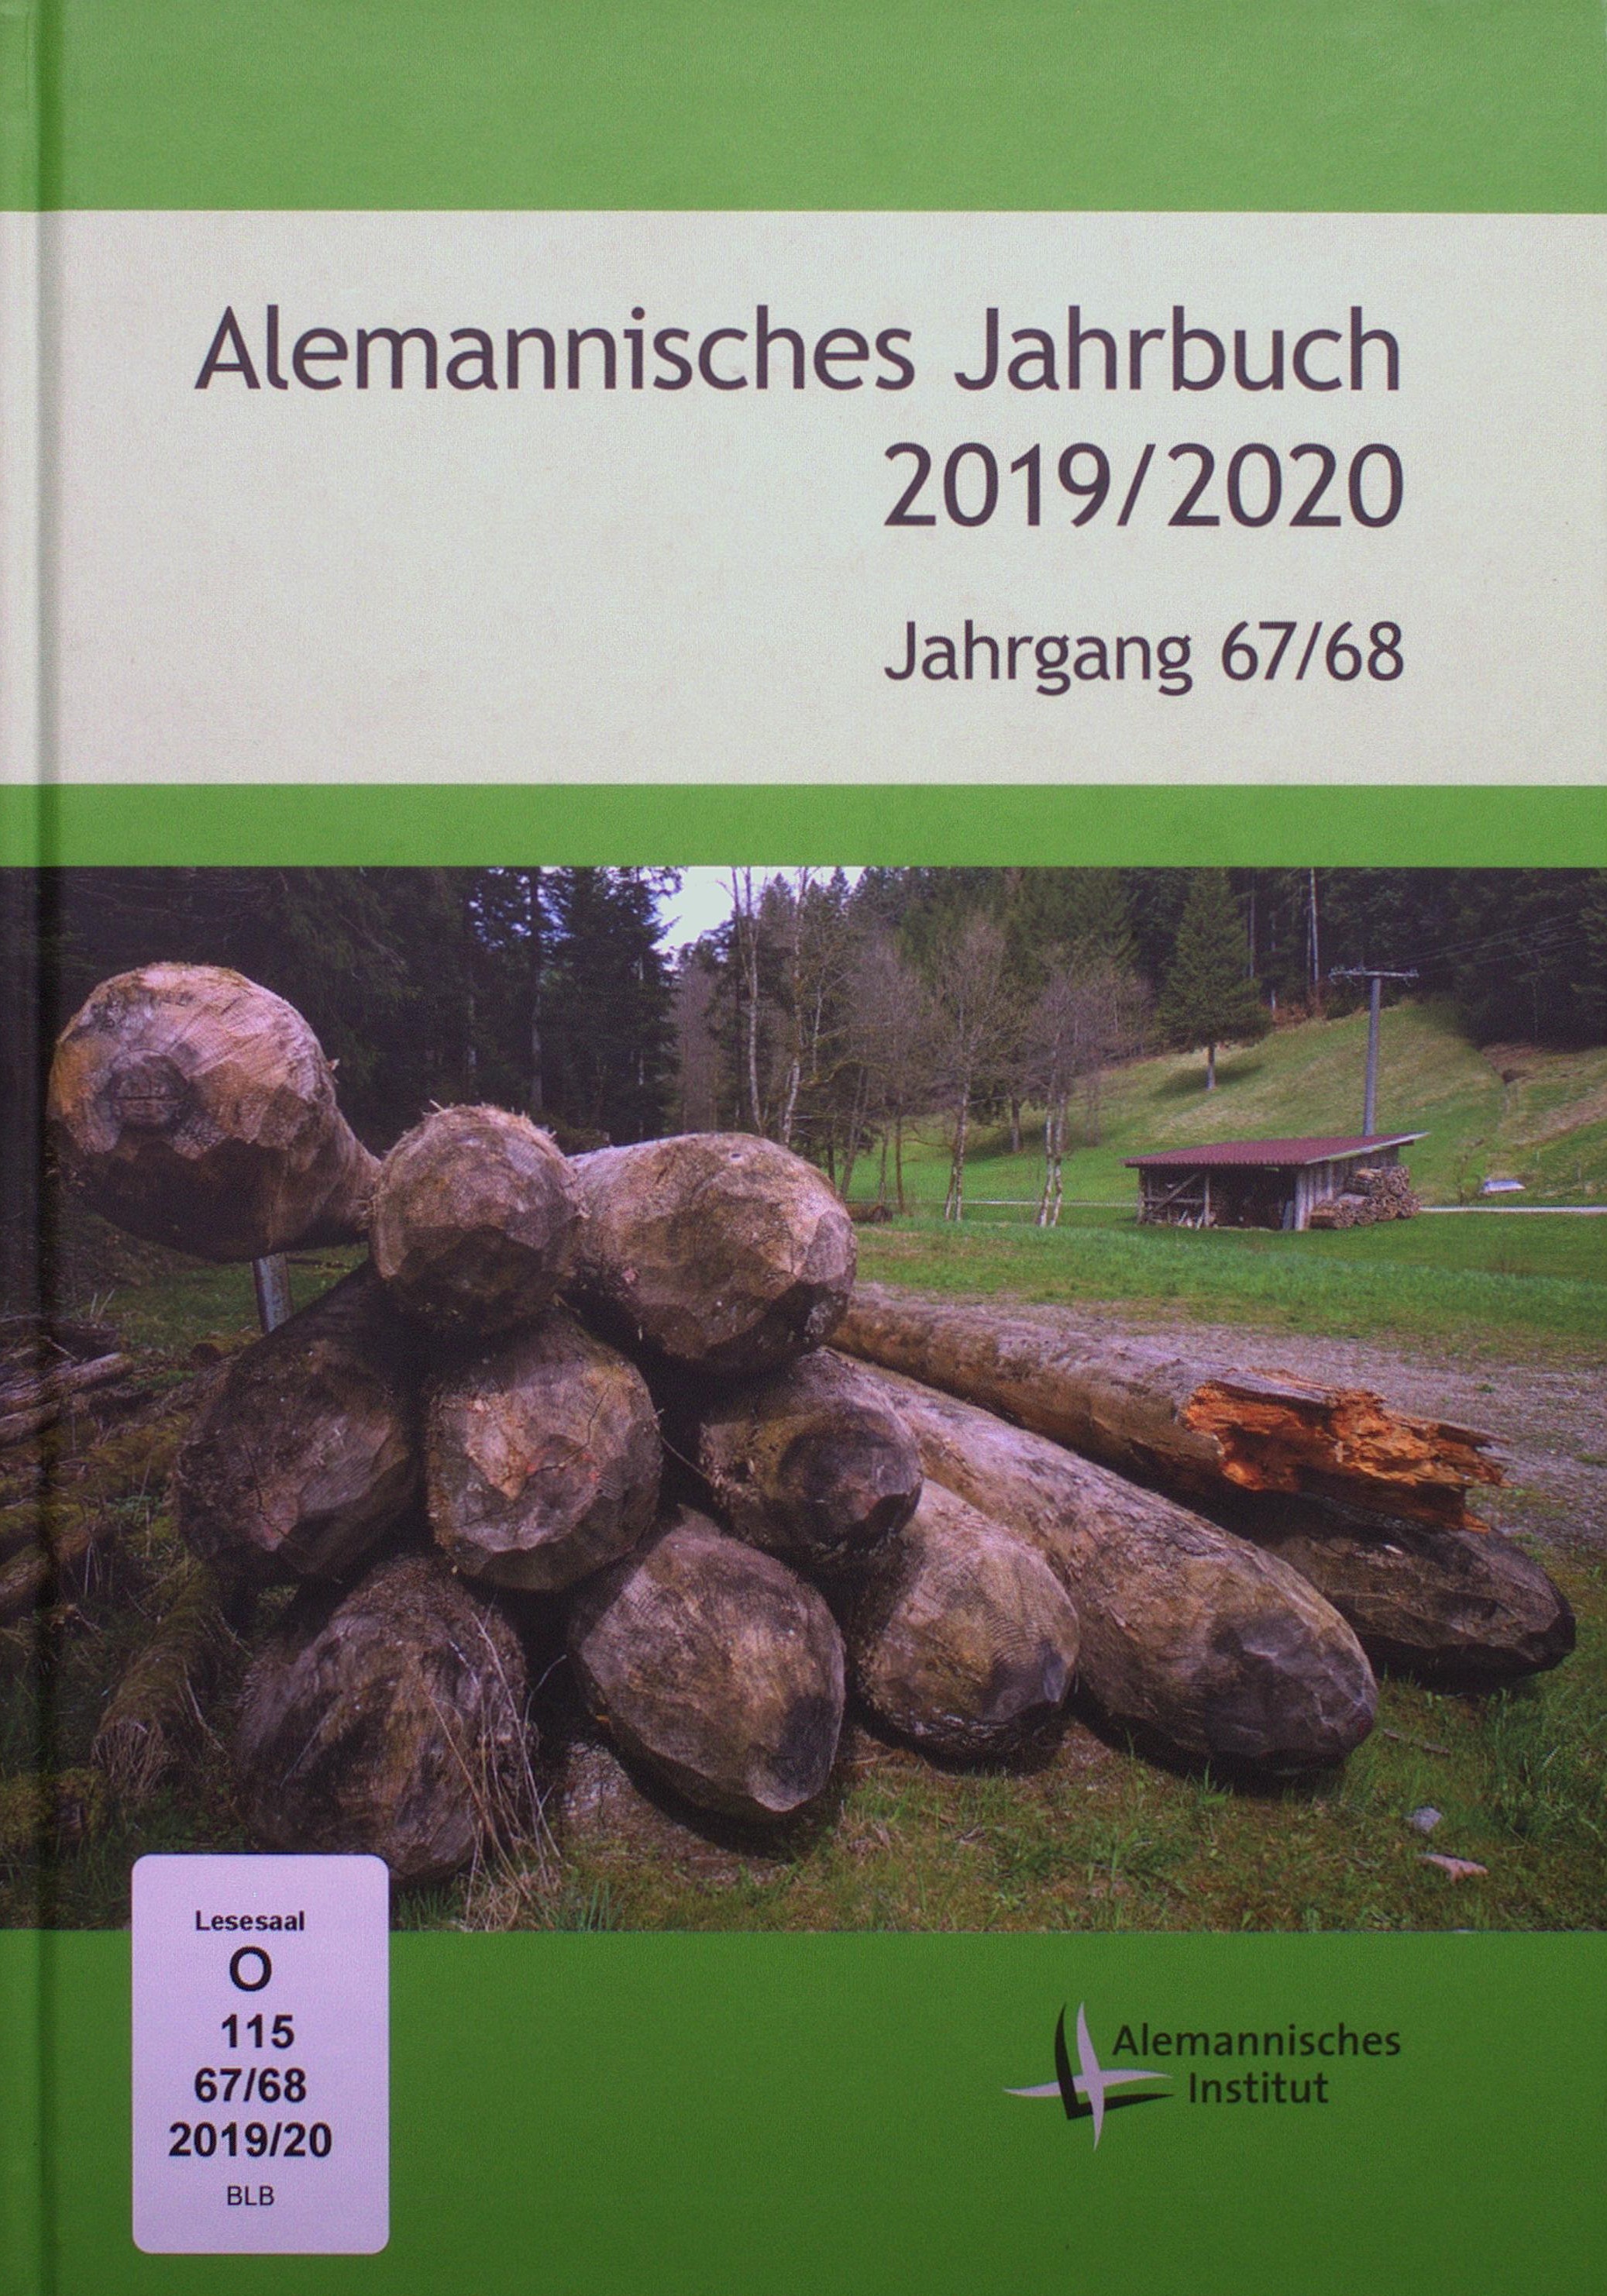 Das Bild zeigt die Titelseite der Zeitschrift „Alemannisches Jahrbuch“.